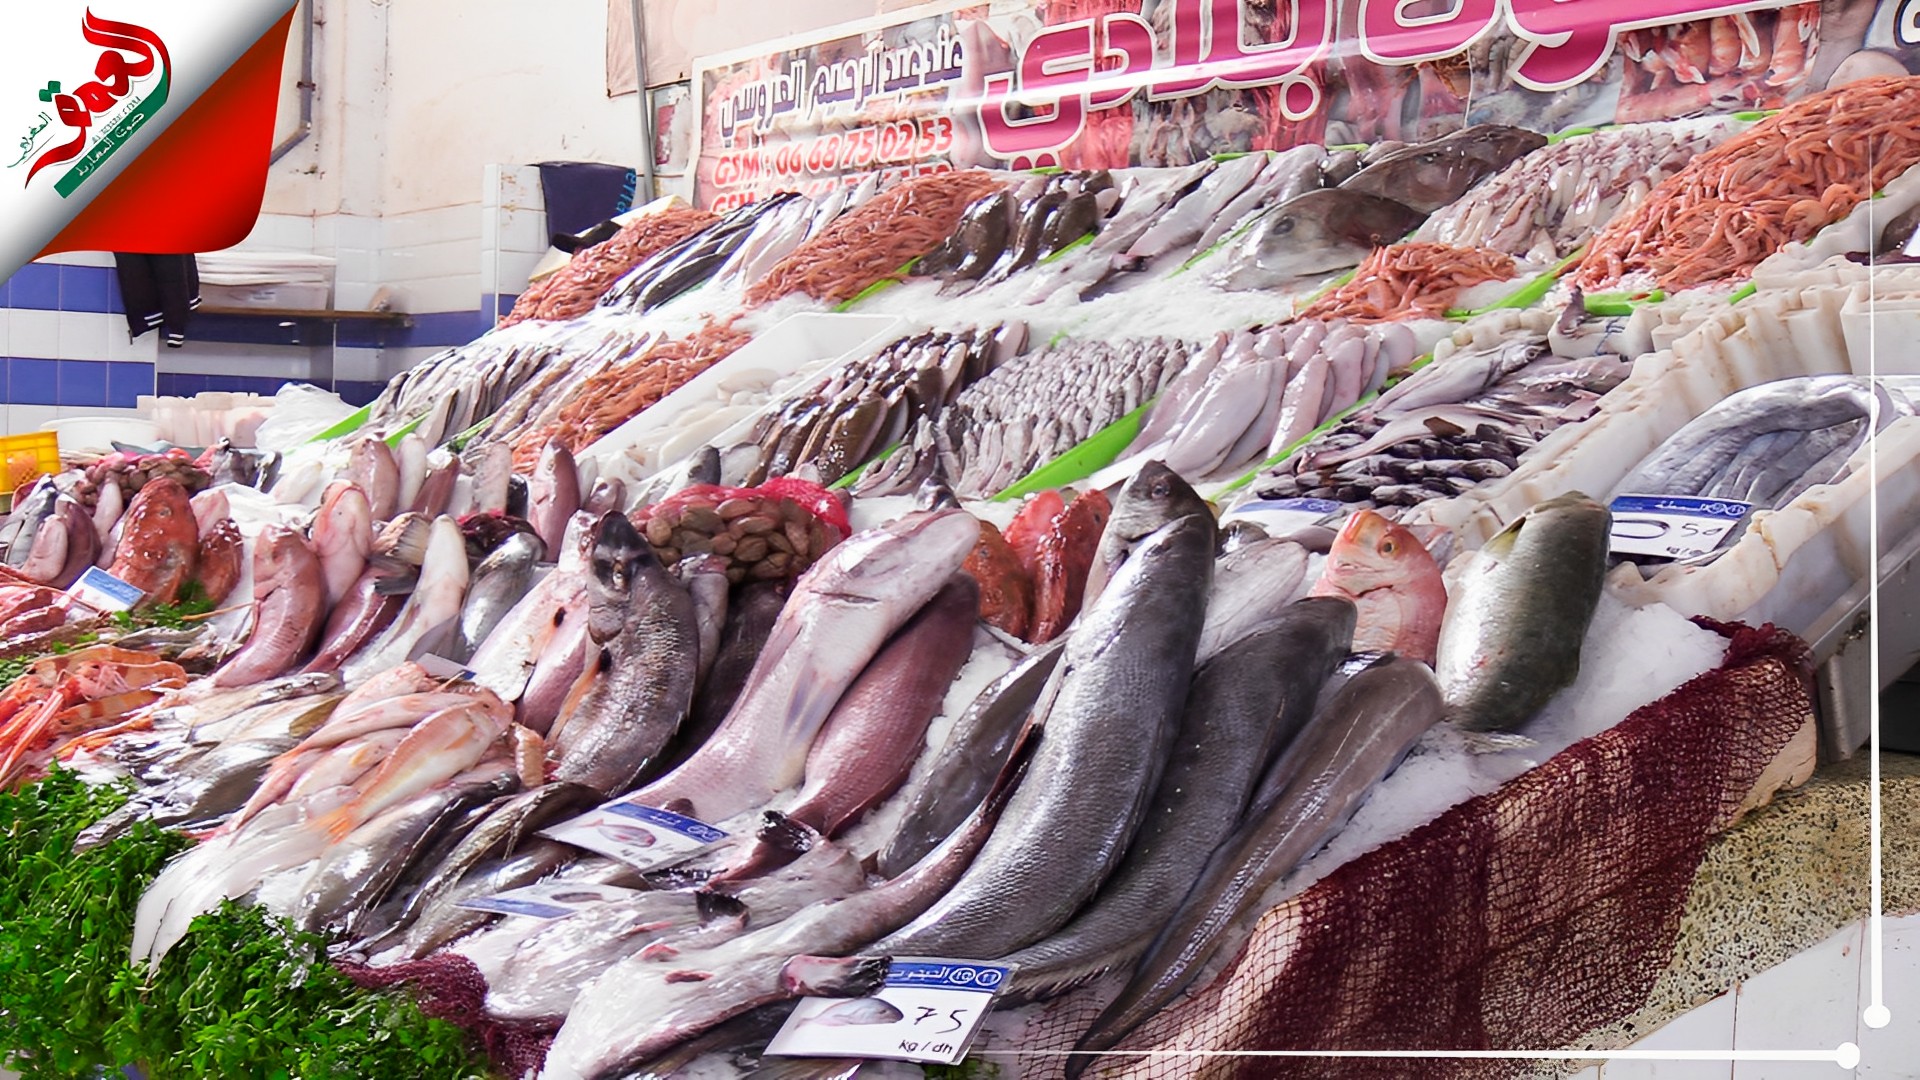 الأسماك قبيل رمضان بين الوفرة وتحكم المضاربين في الأسعار  (فيديو)